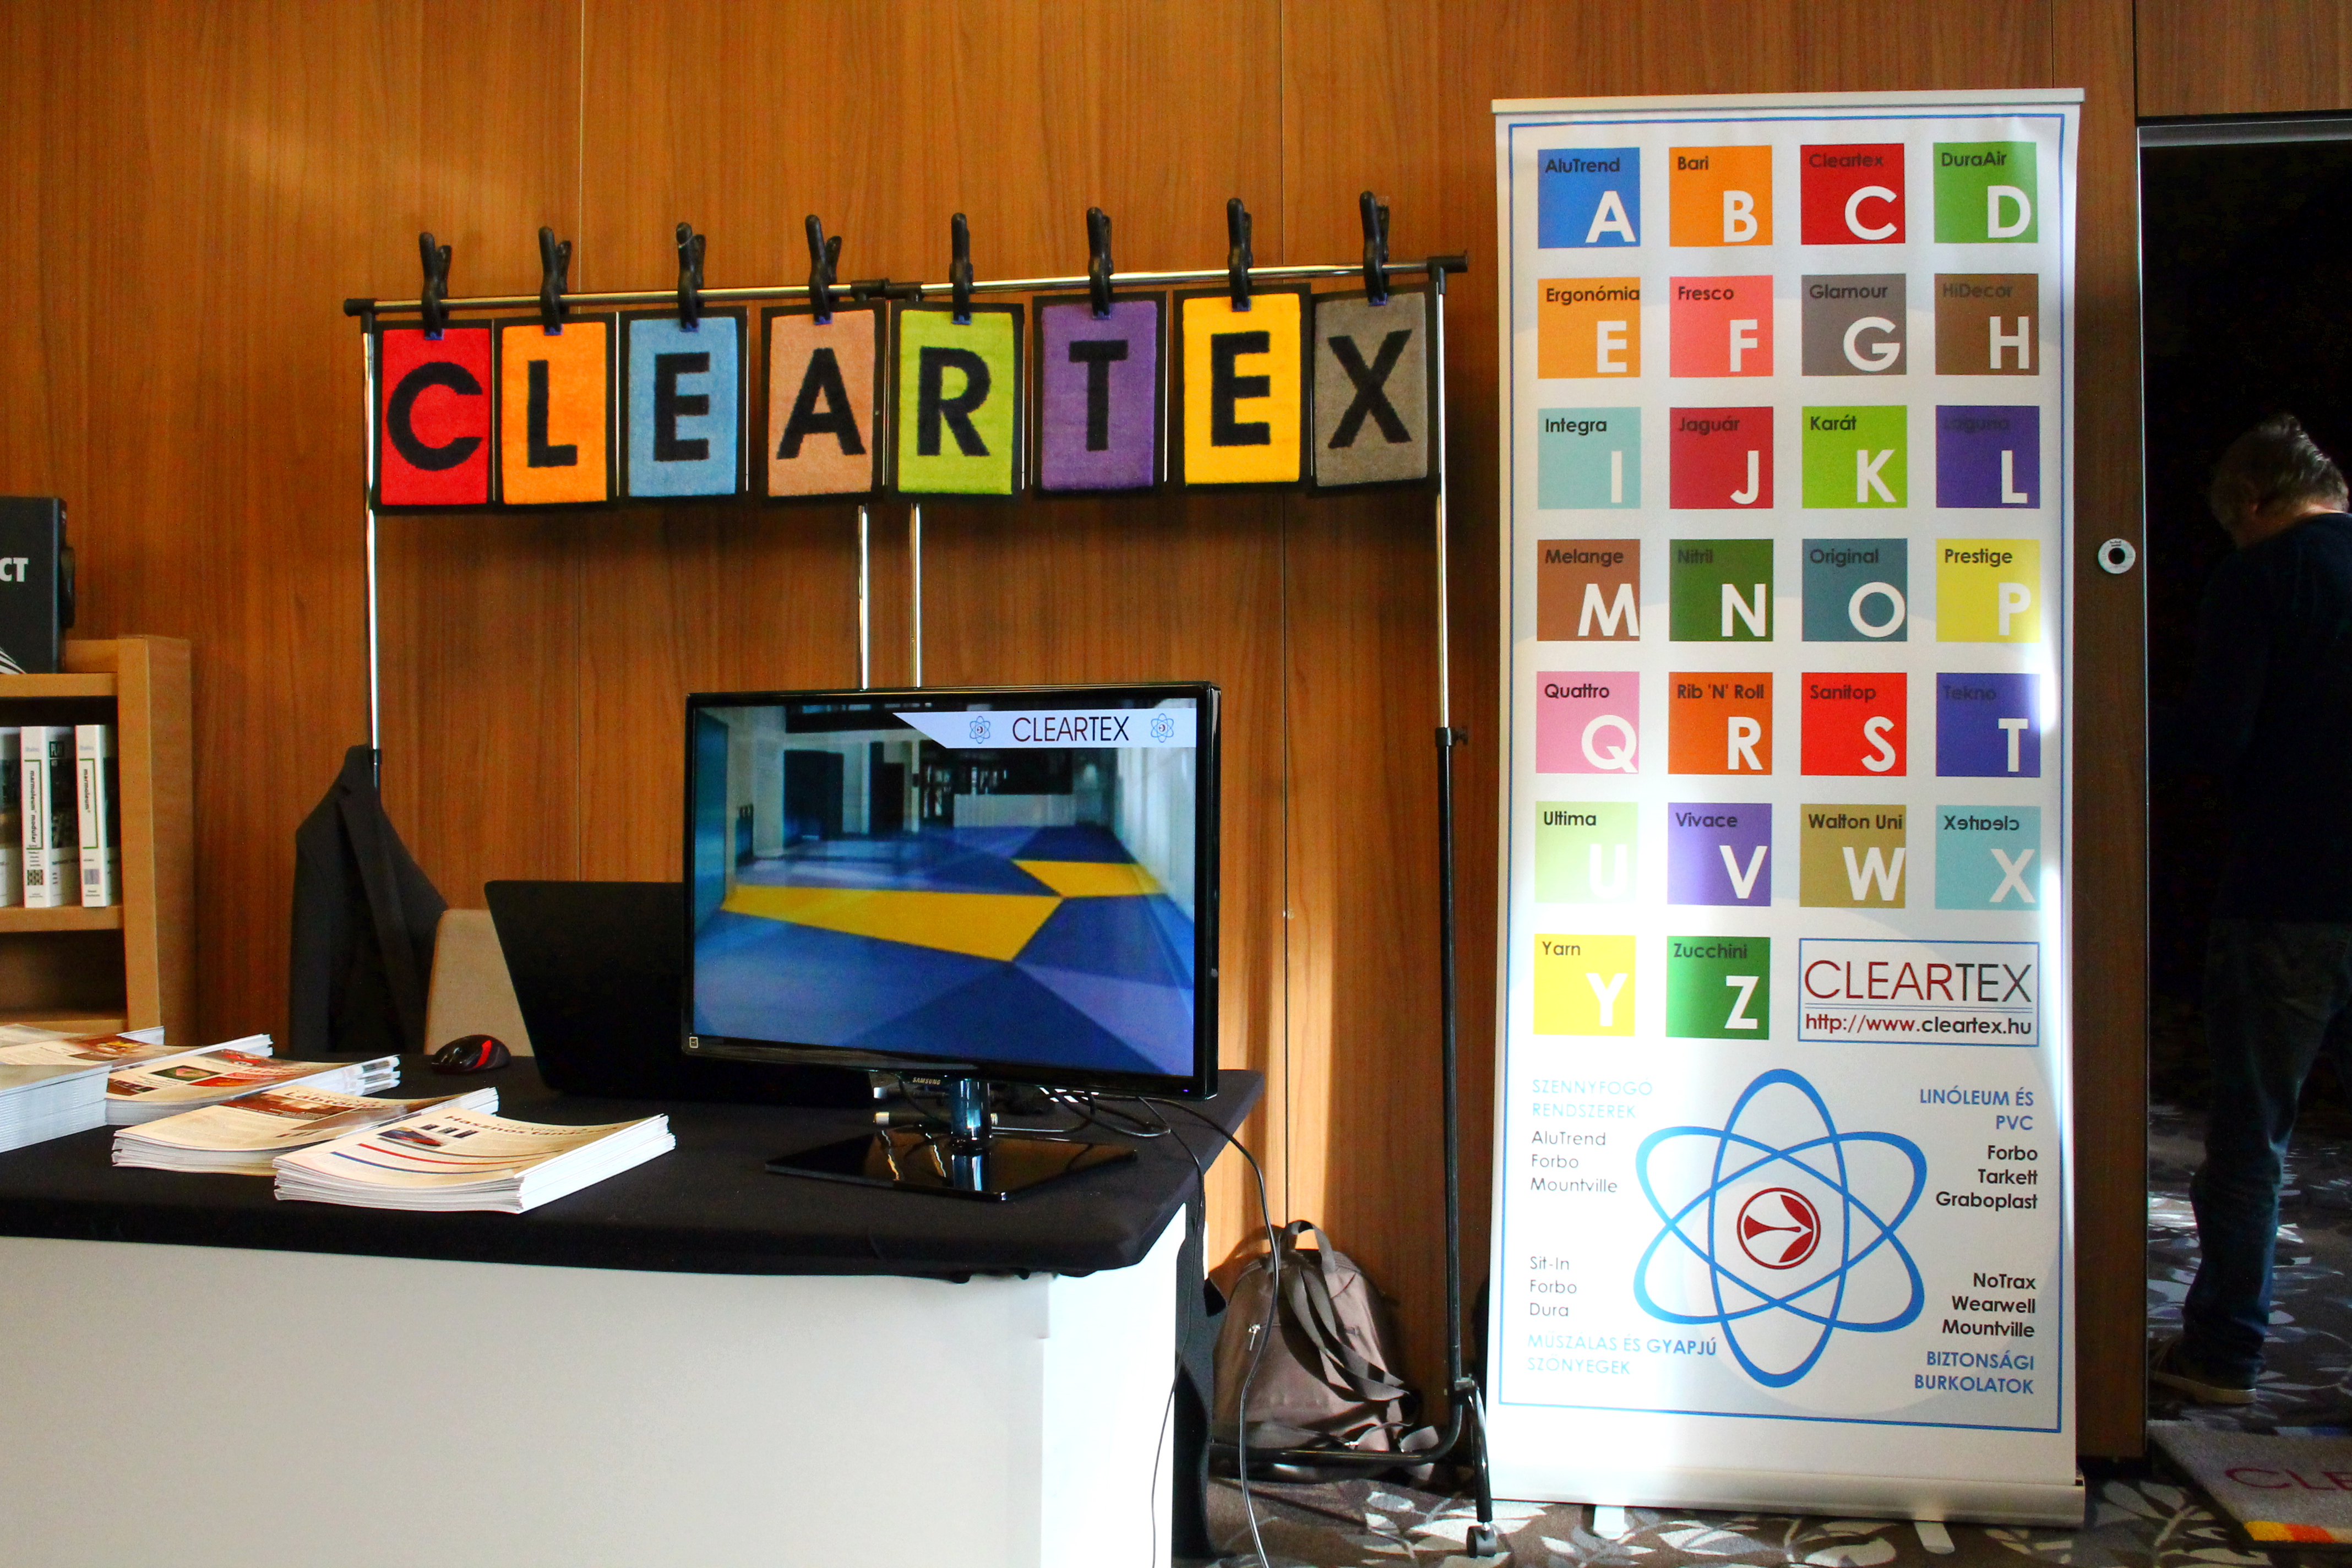 Cleartex az Alaprajz 2015 konferencián